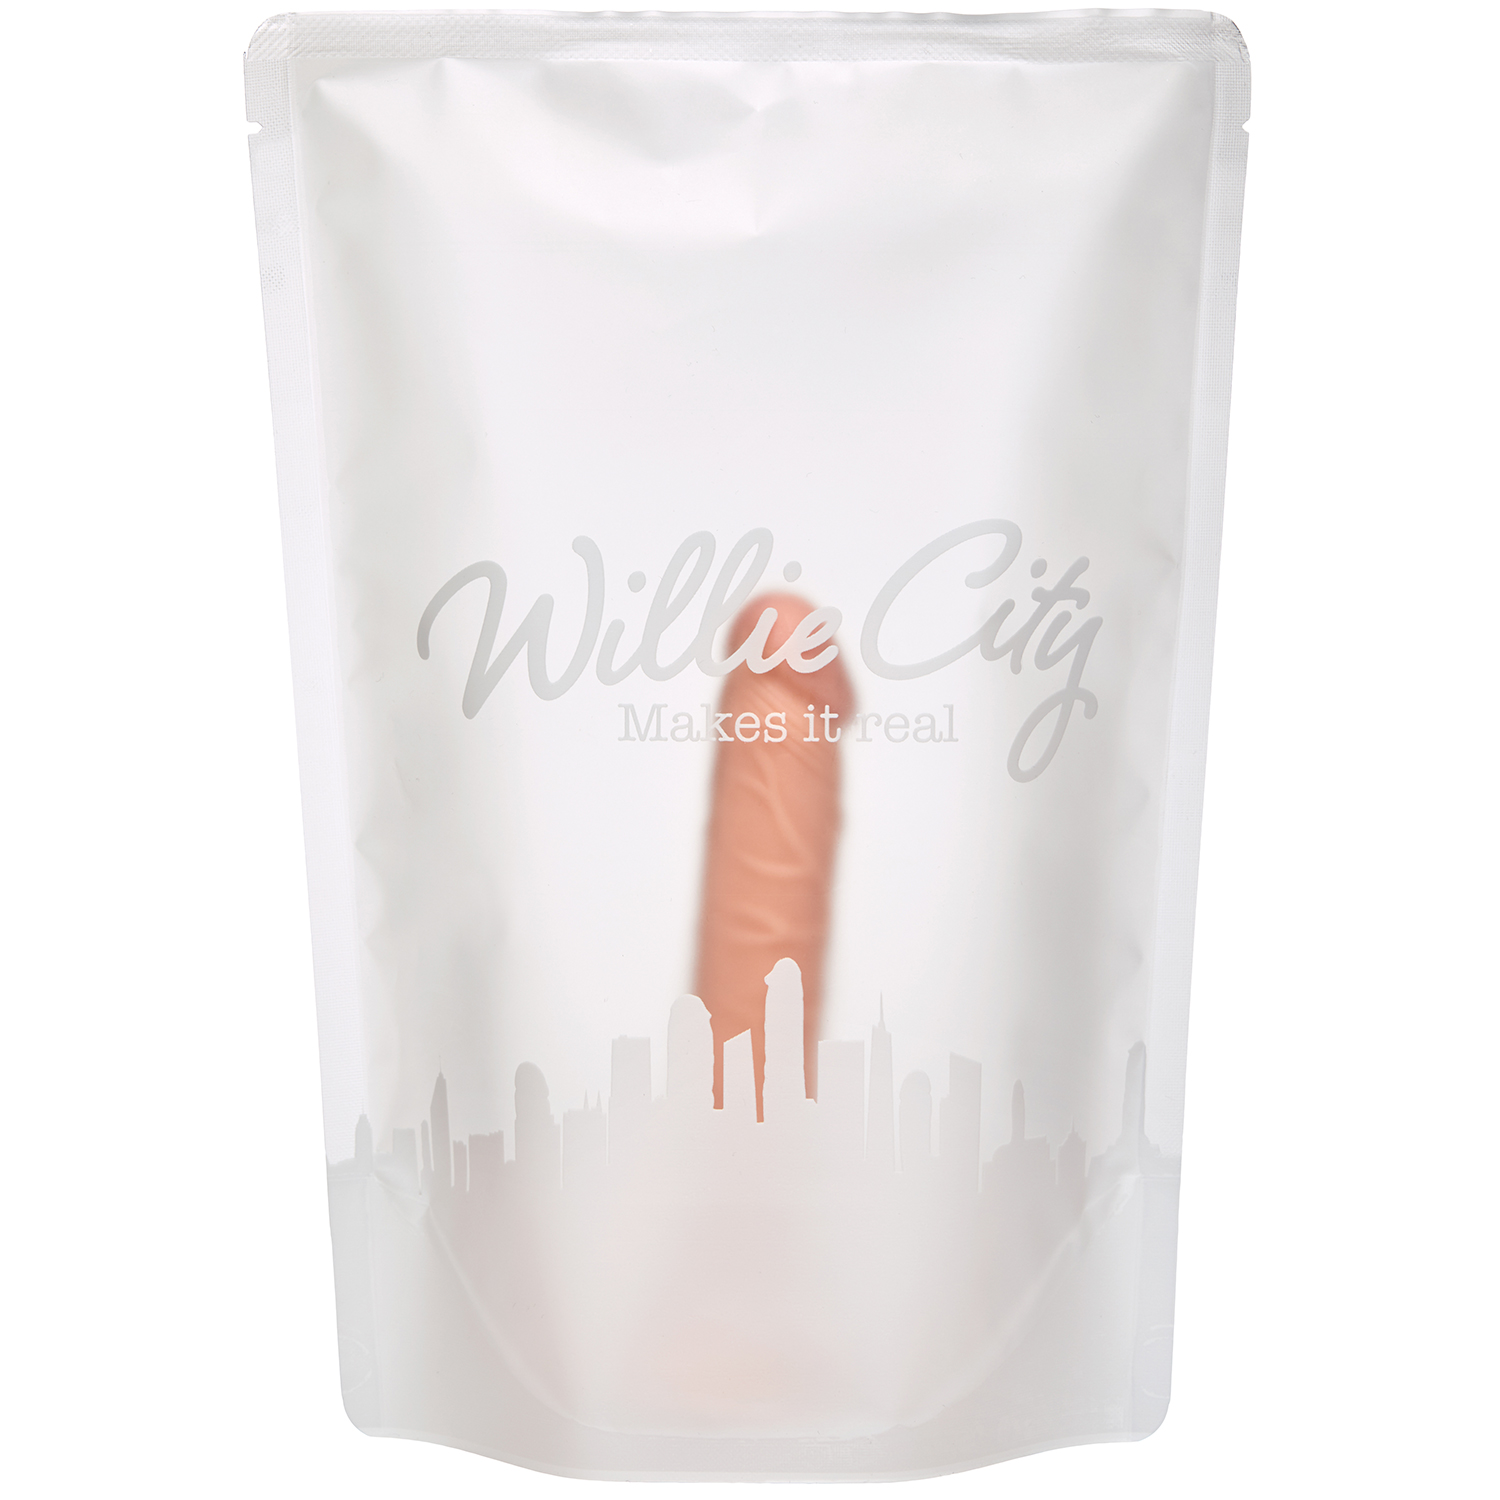 Willie City Realistisk Dildo med Sugekop 14,5 cm thumbnail